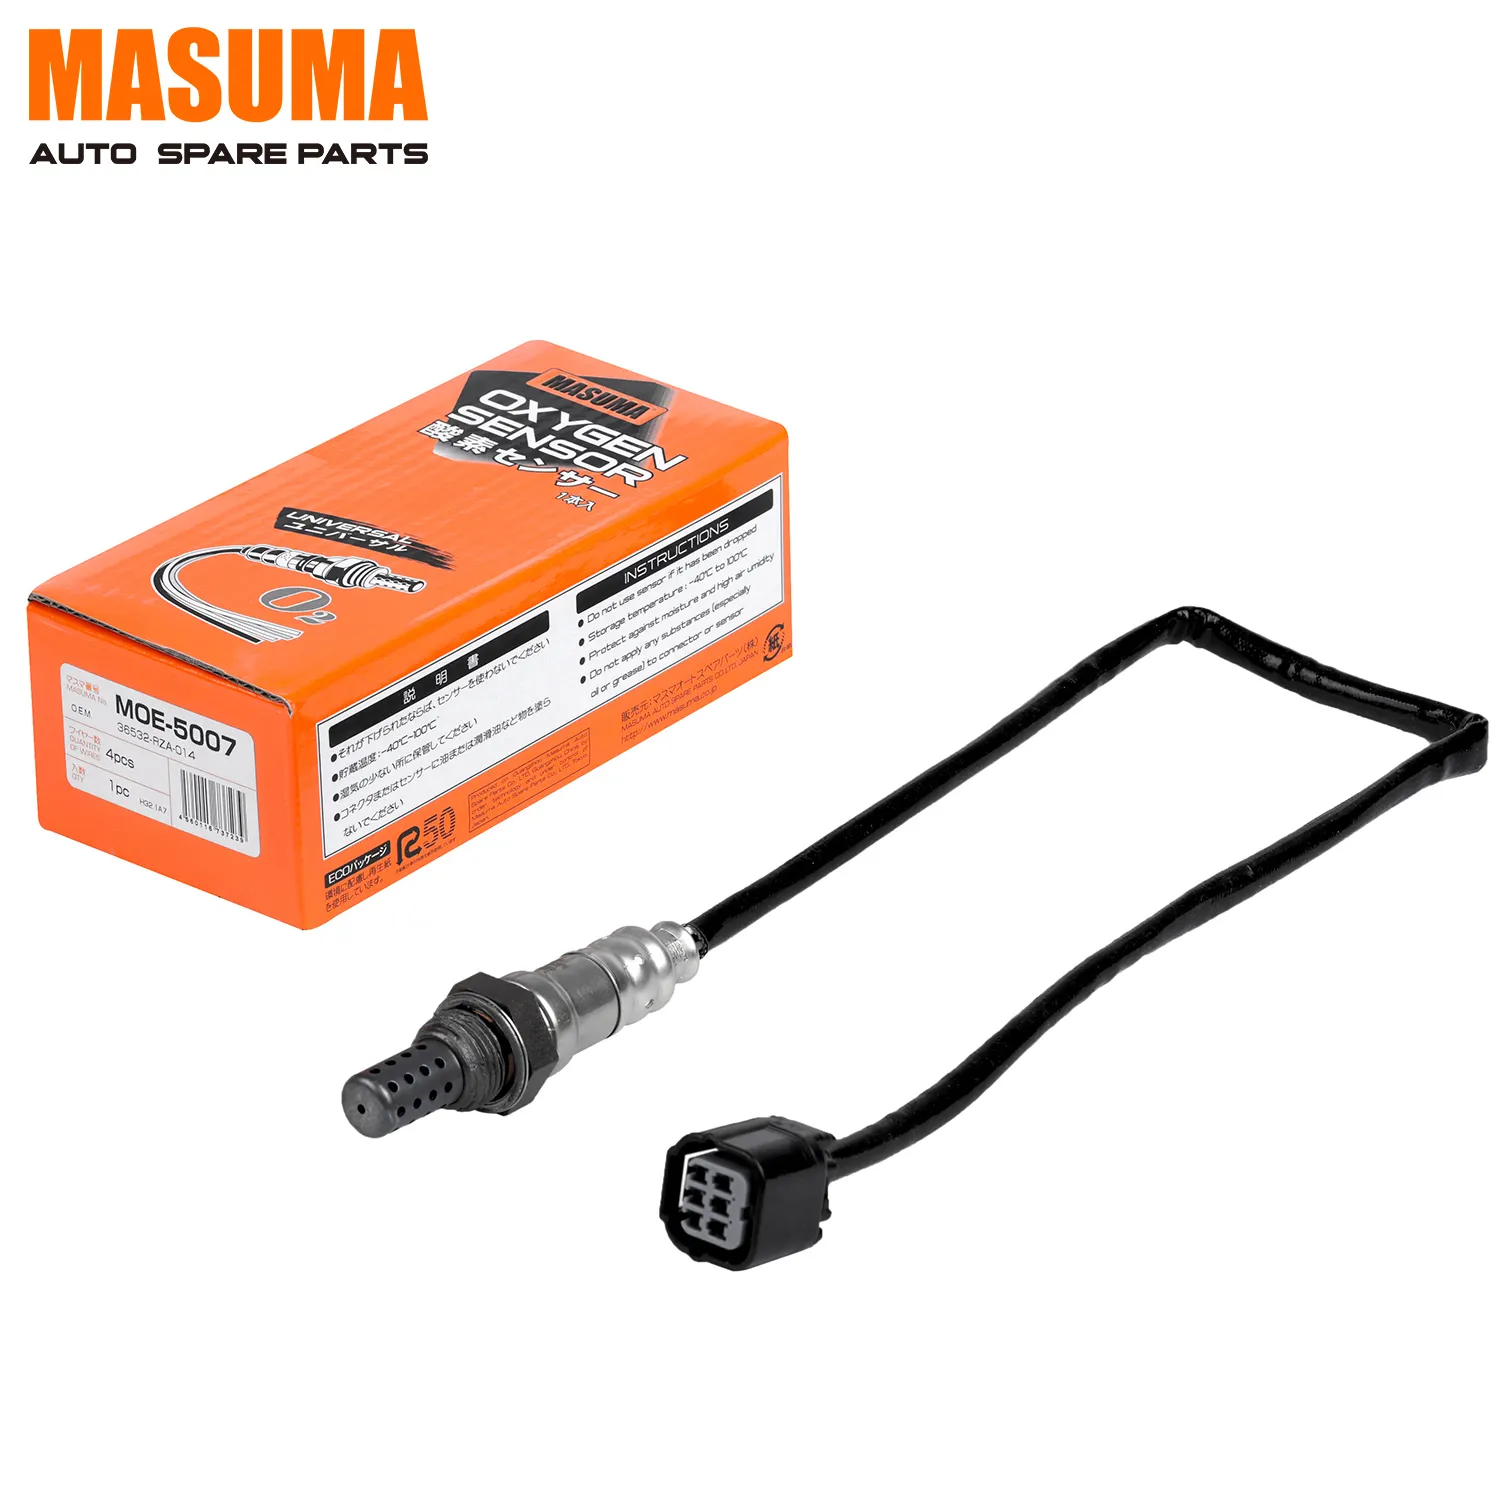 MOE-5007 MASUMA Auto Auto Electrical System O2 Oxygen Sensor 36532-RZA-004 36532-RZA-014 for HONDA CR-V